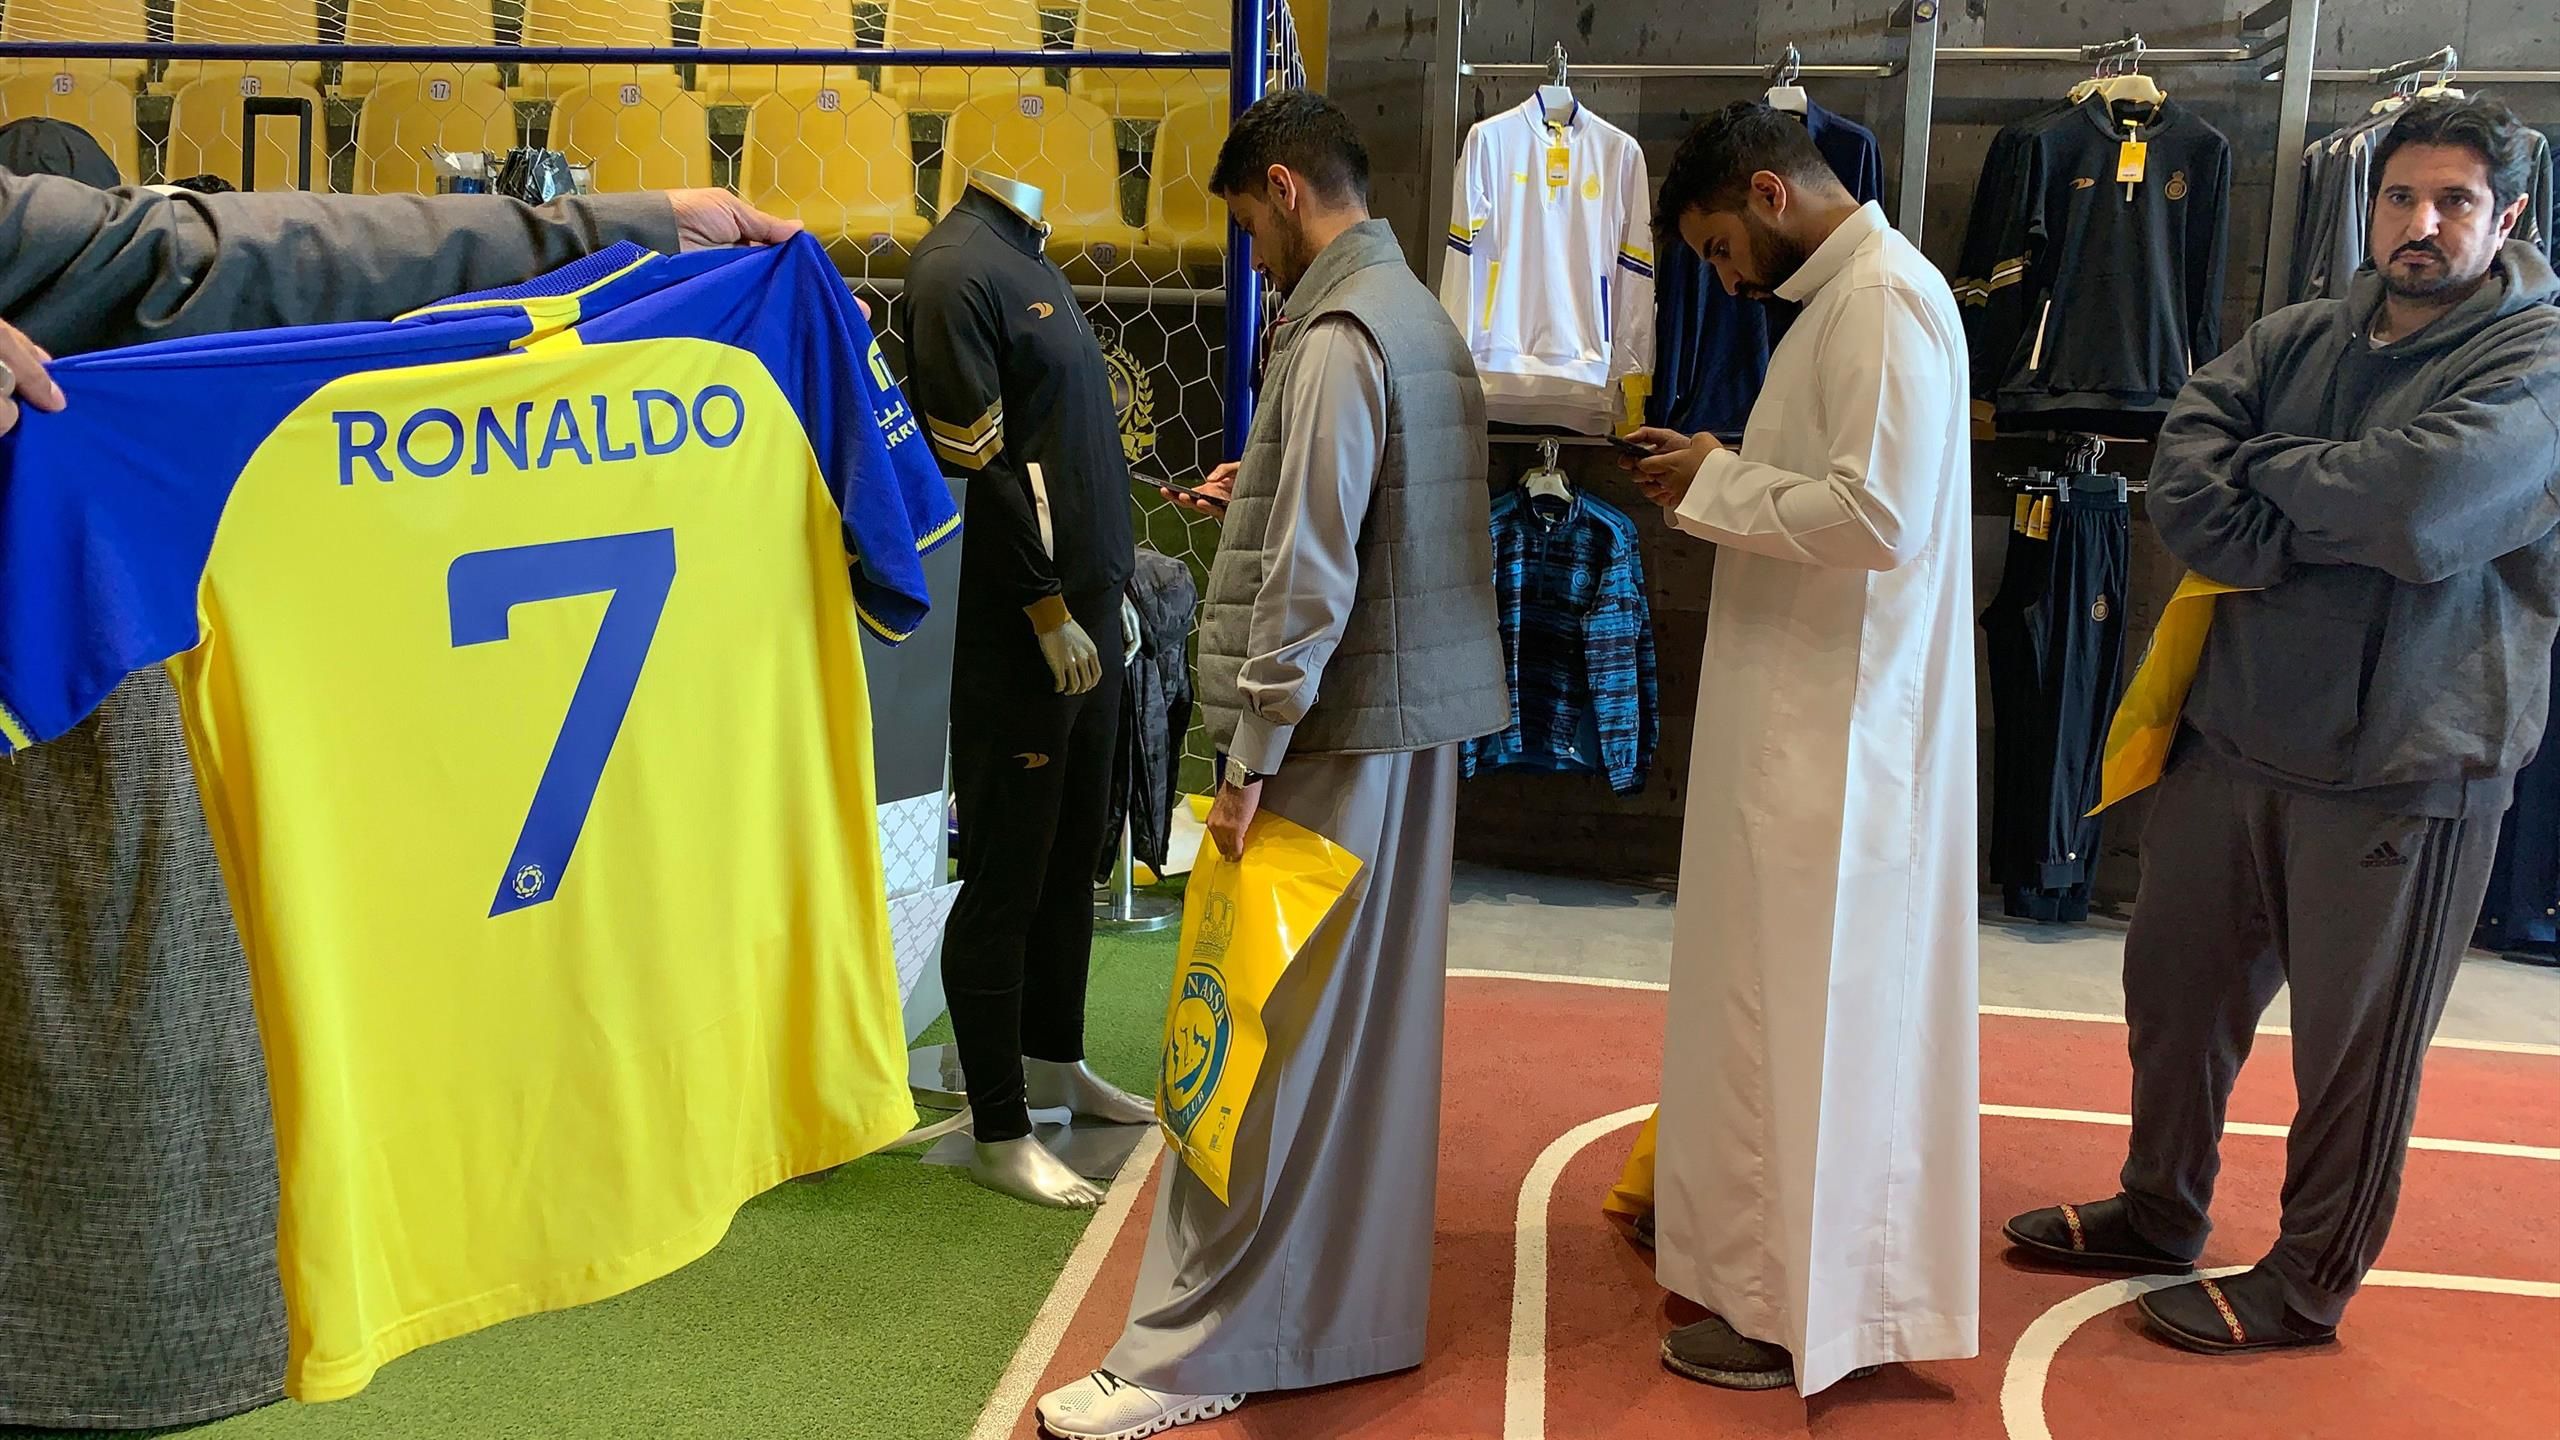 La Ronaldomania a débuté : les maillots d'Al-Nassr s'arrachent